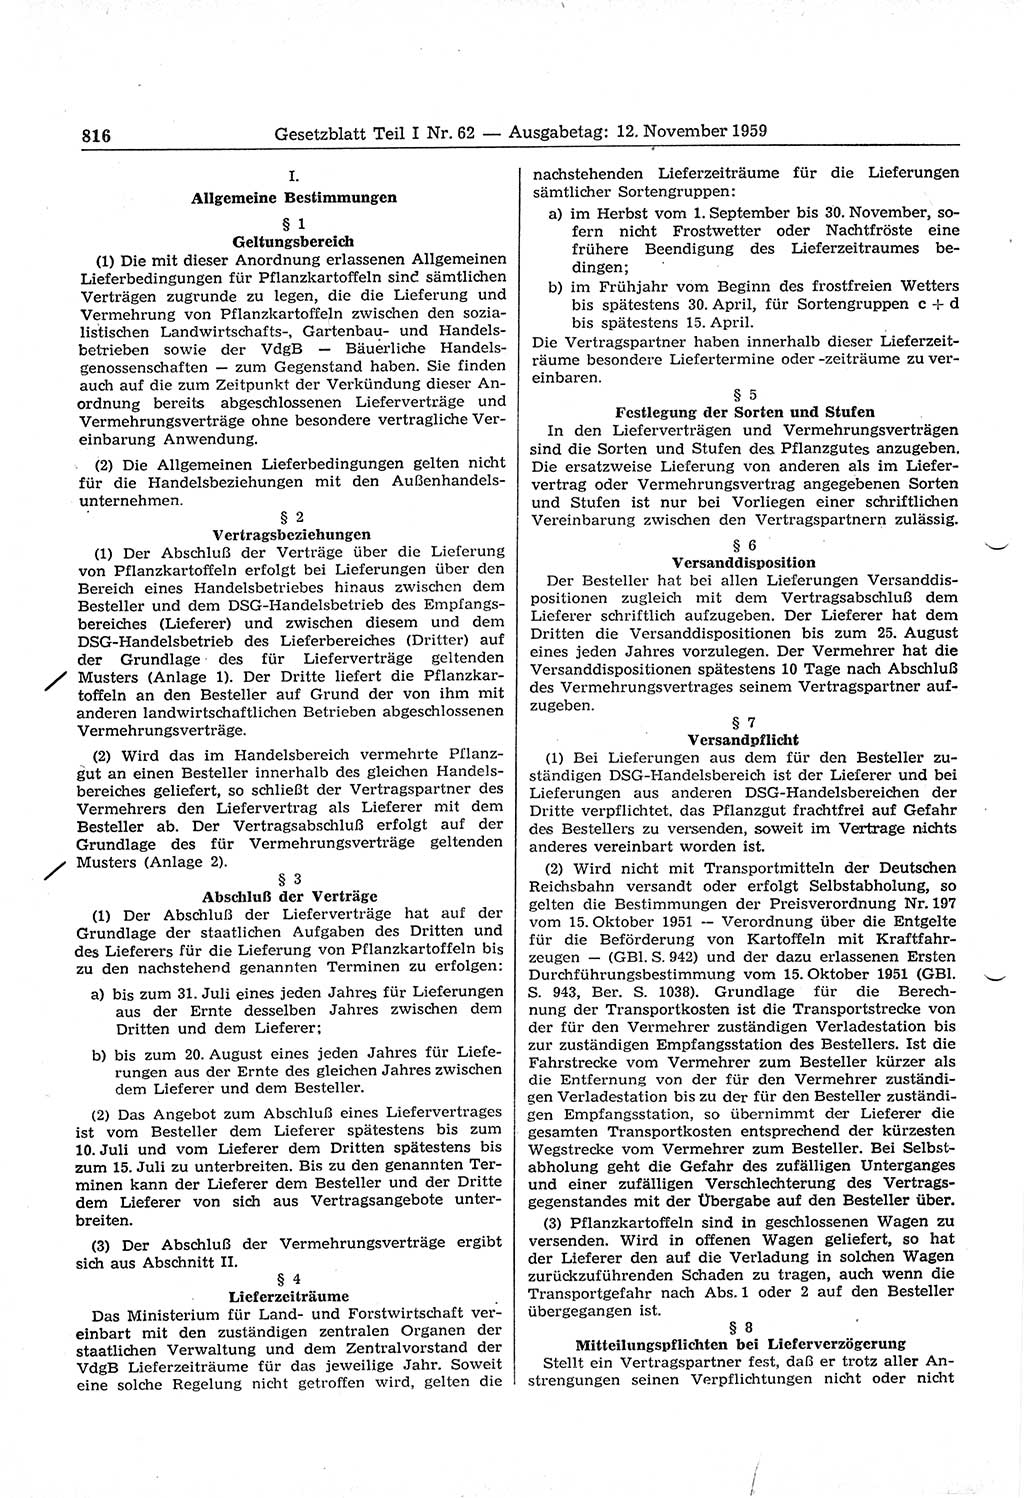 Gesetzblatt (GBl.) der Deutschen Demokratischen Republik (DDR) Teil Ⅰ 1959, Seite 816 (GBl. DDR Ⅰ 1959, S. 816)